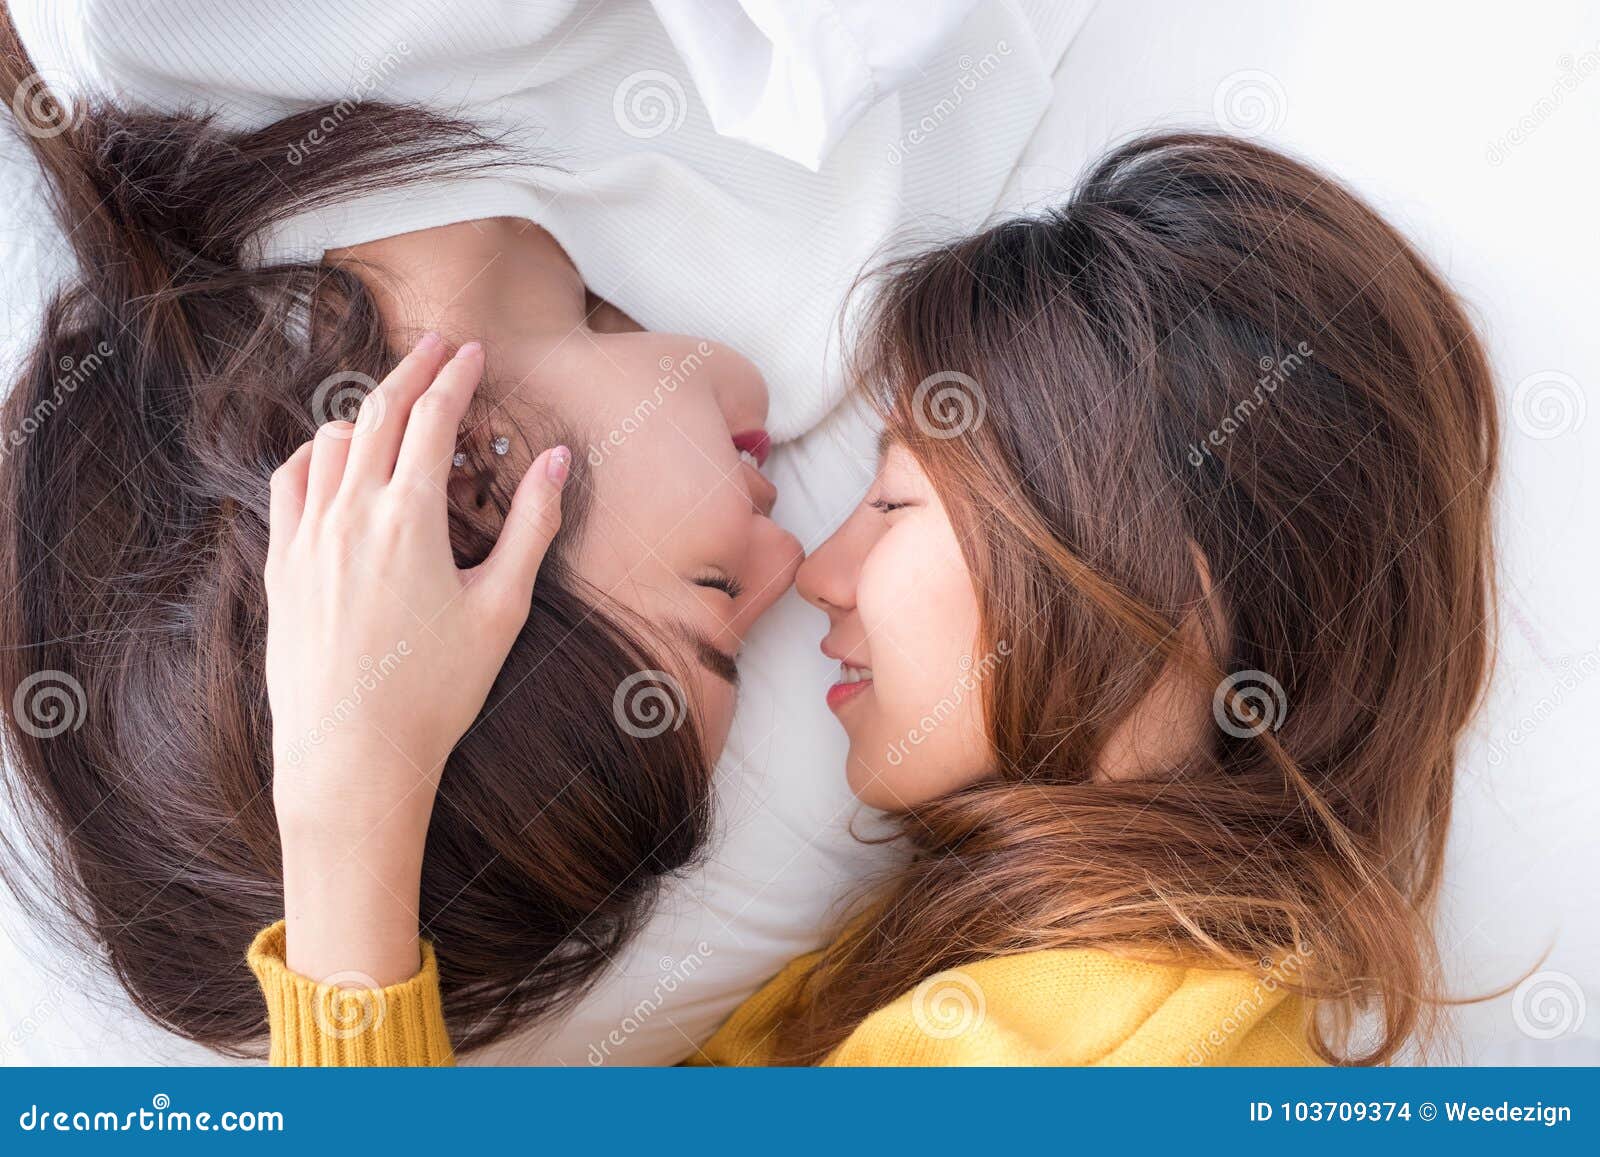 cute asian lesbian kiss hot porn